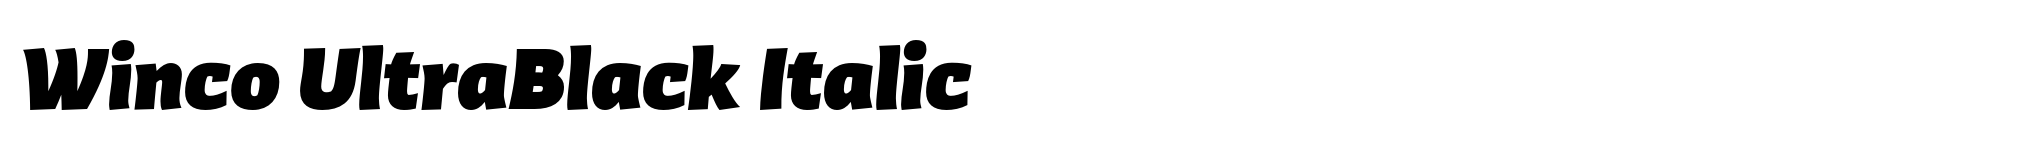 Winco UltraBlack Italic image